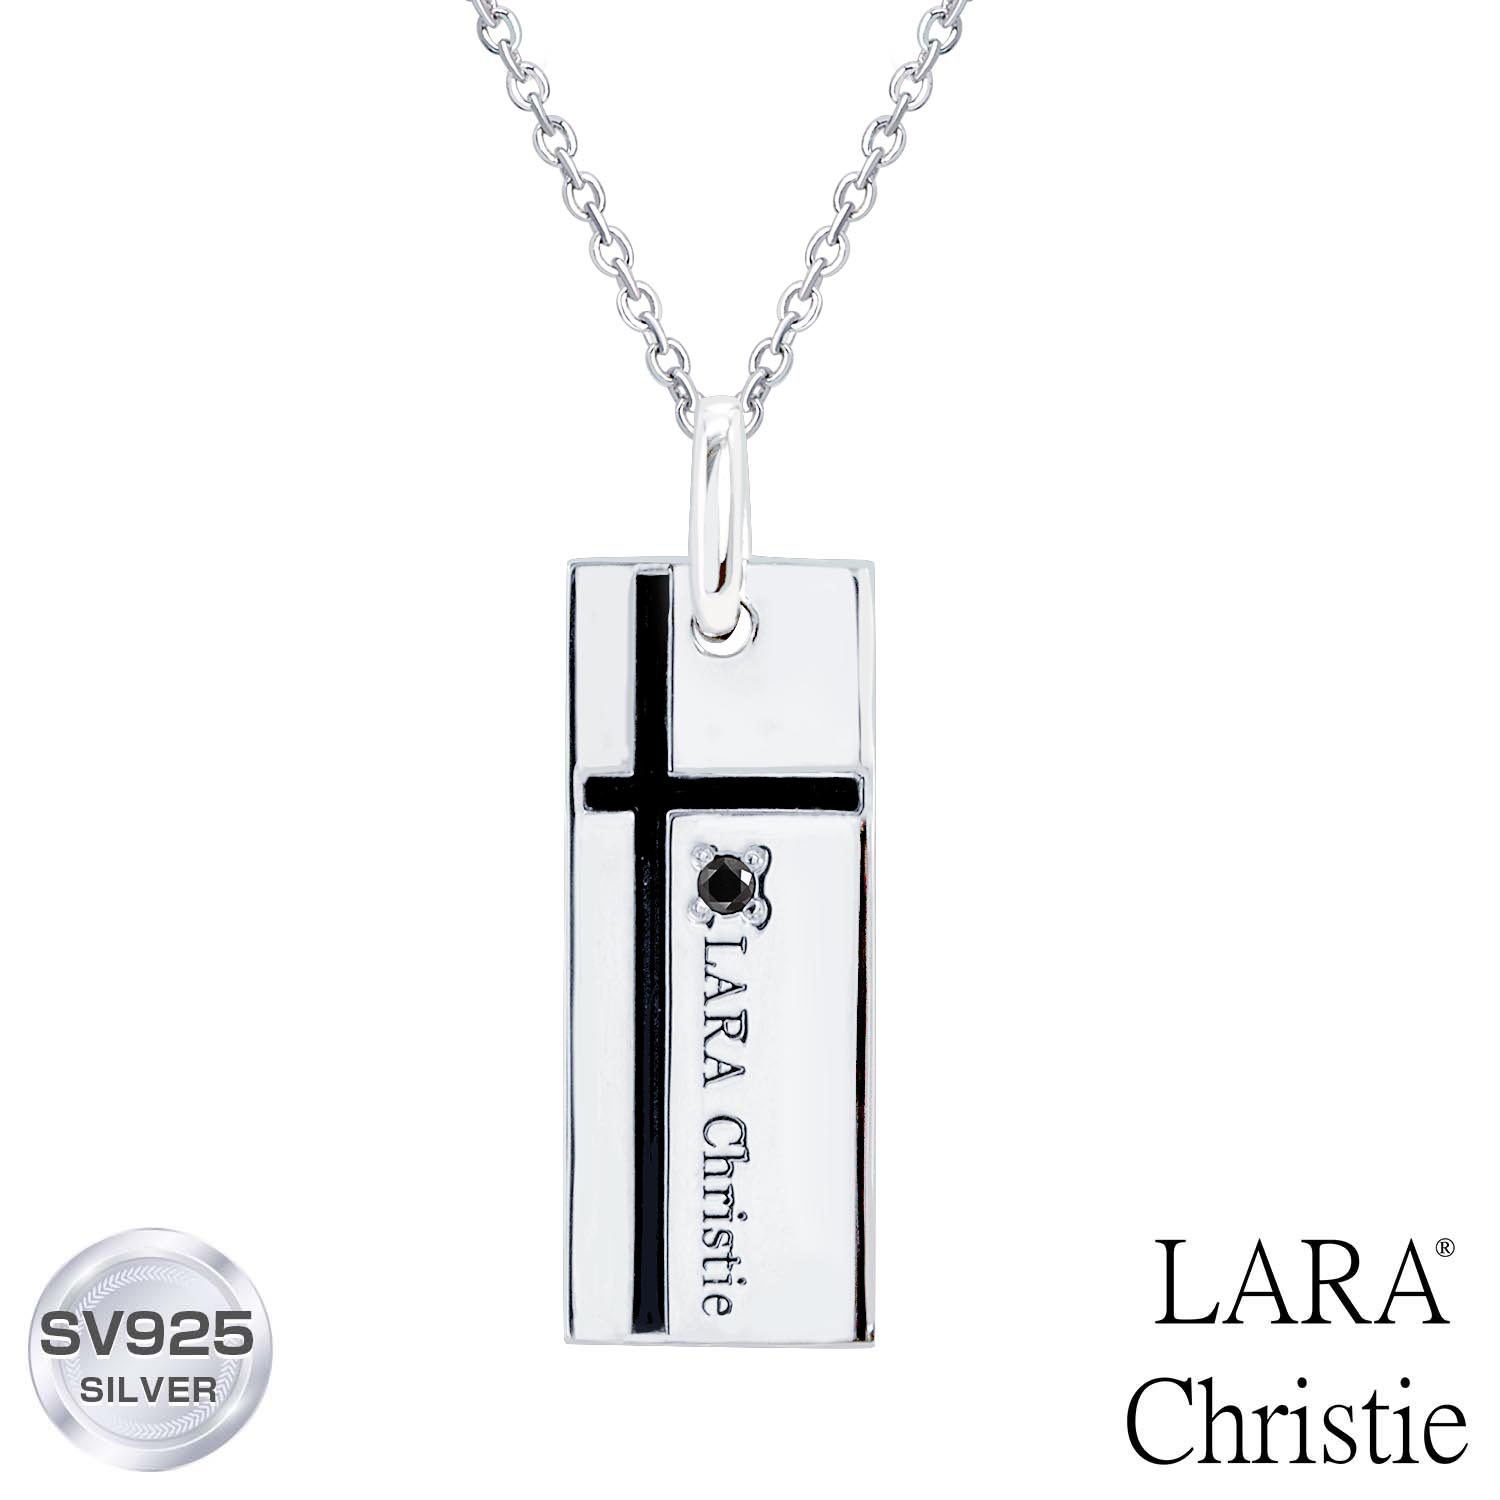 ネックレス メンズ LARA Christie (ララクリスティー) ノーブル クロスネックレス[ BLACK Label ] シルバー925 silver 男性 誕生日プレゼント